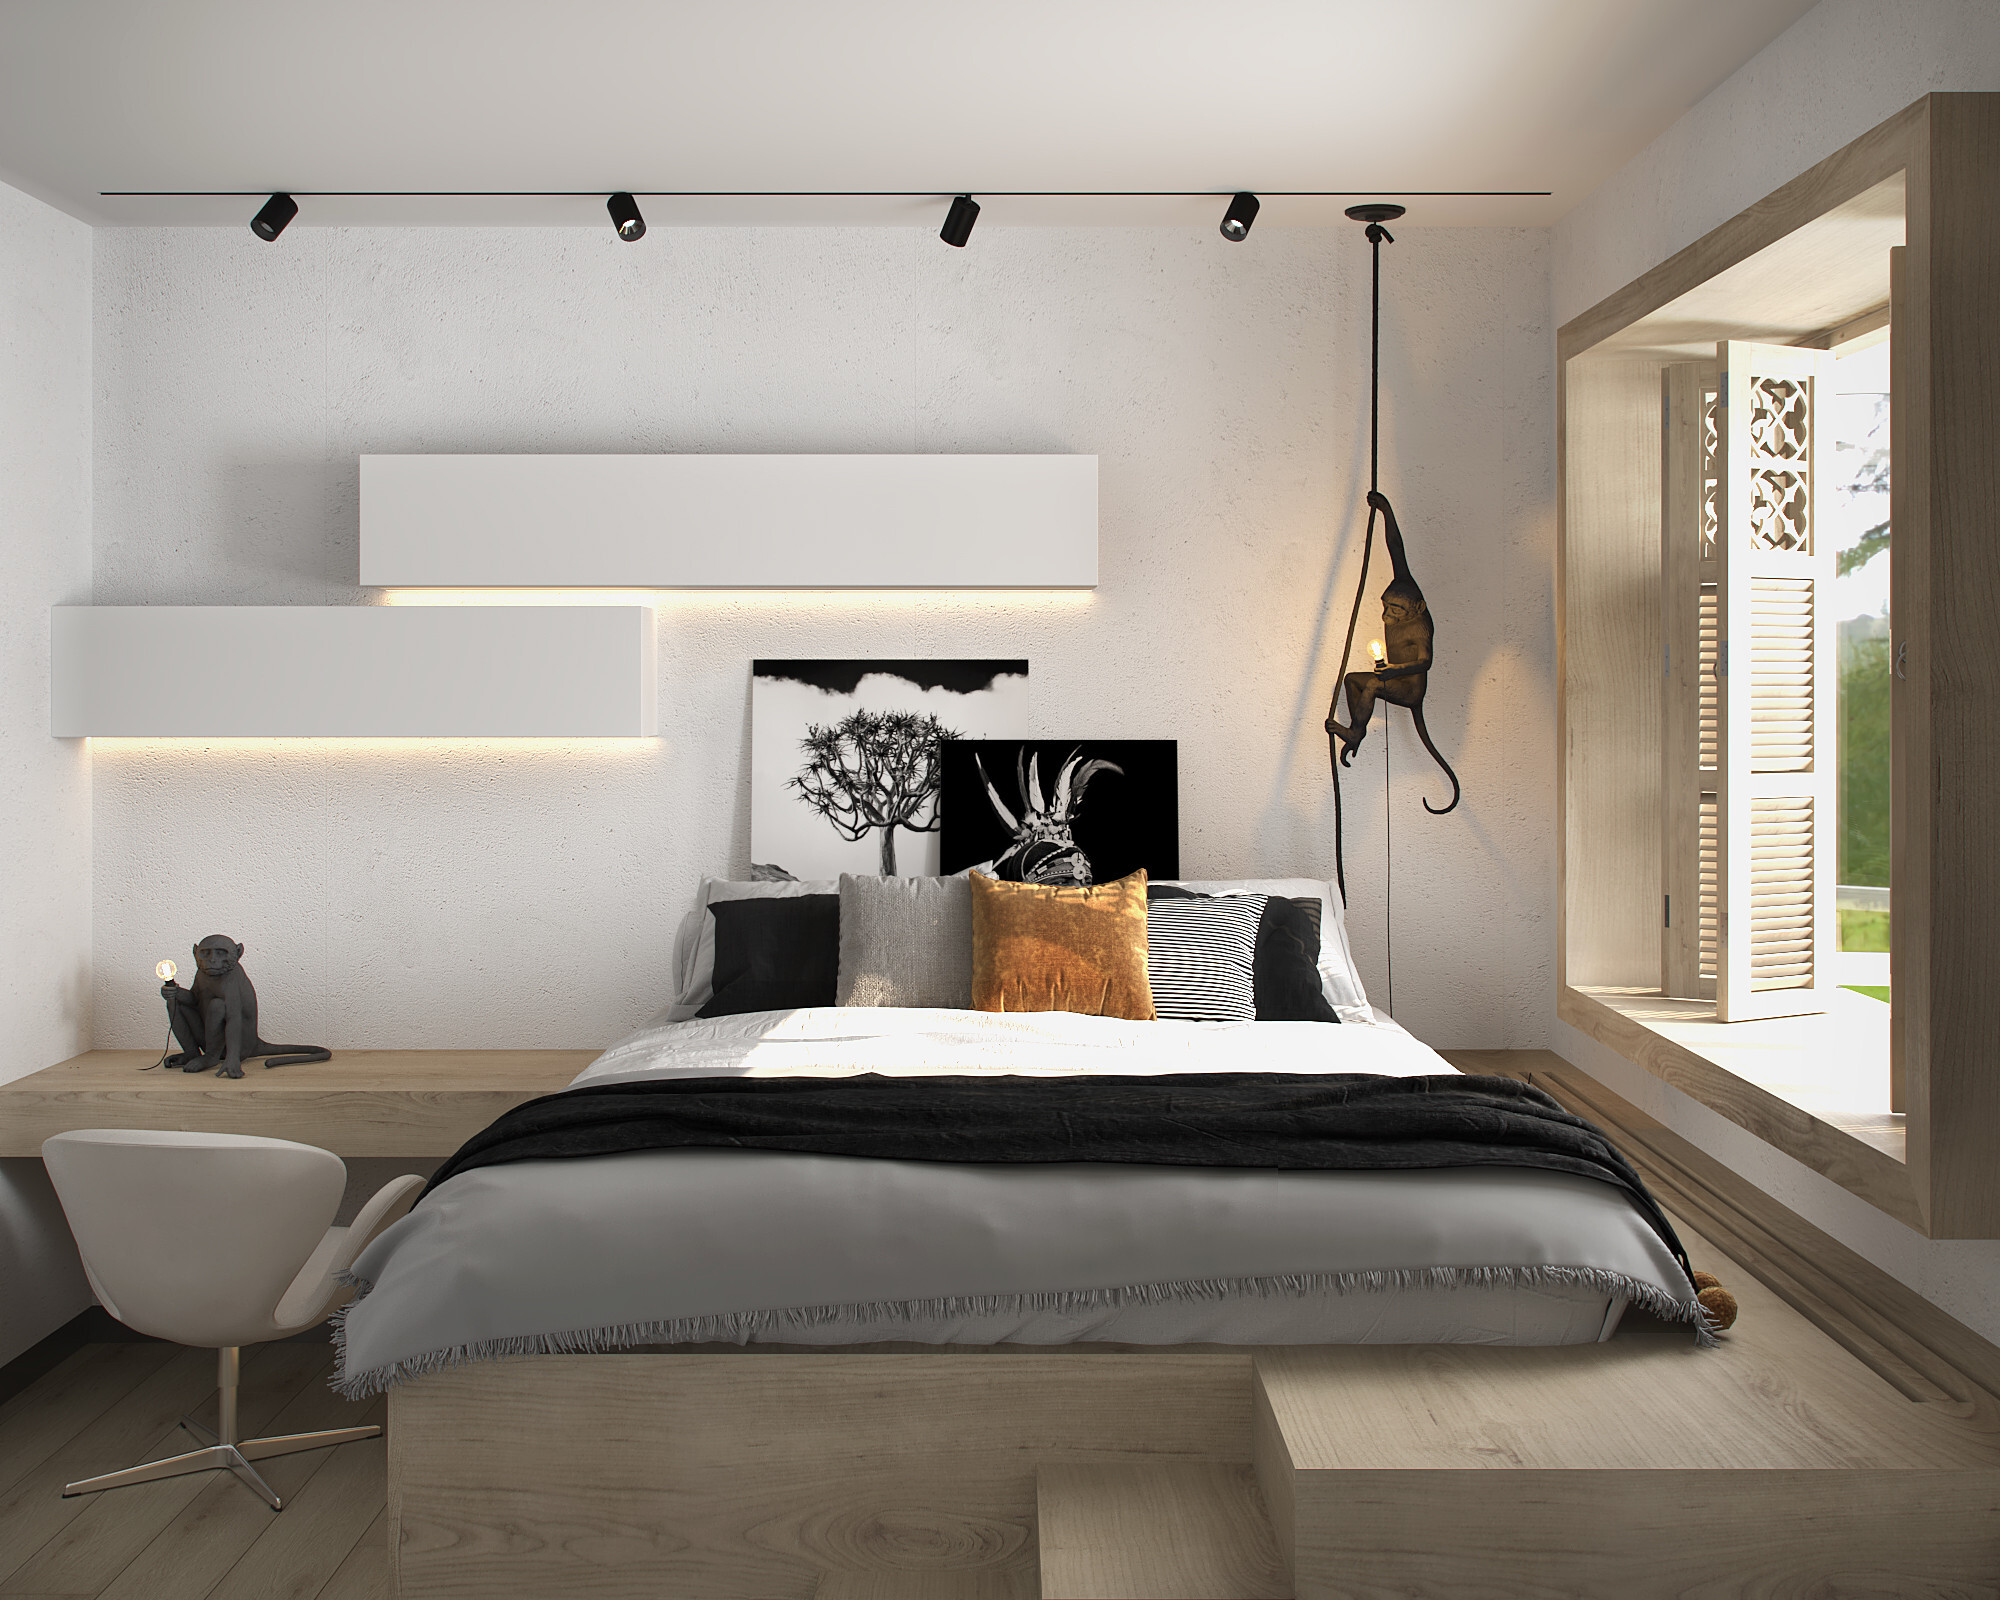 Интерьер спальни с рейками с подсветкой, бра над кроватью, подсветкой настенной и светильниками над кроватью в стиле лофт